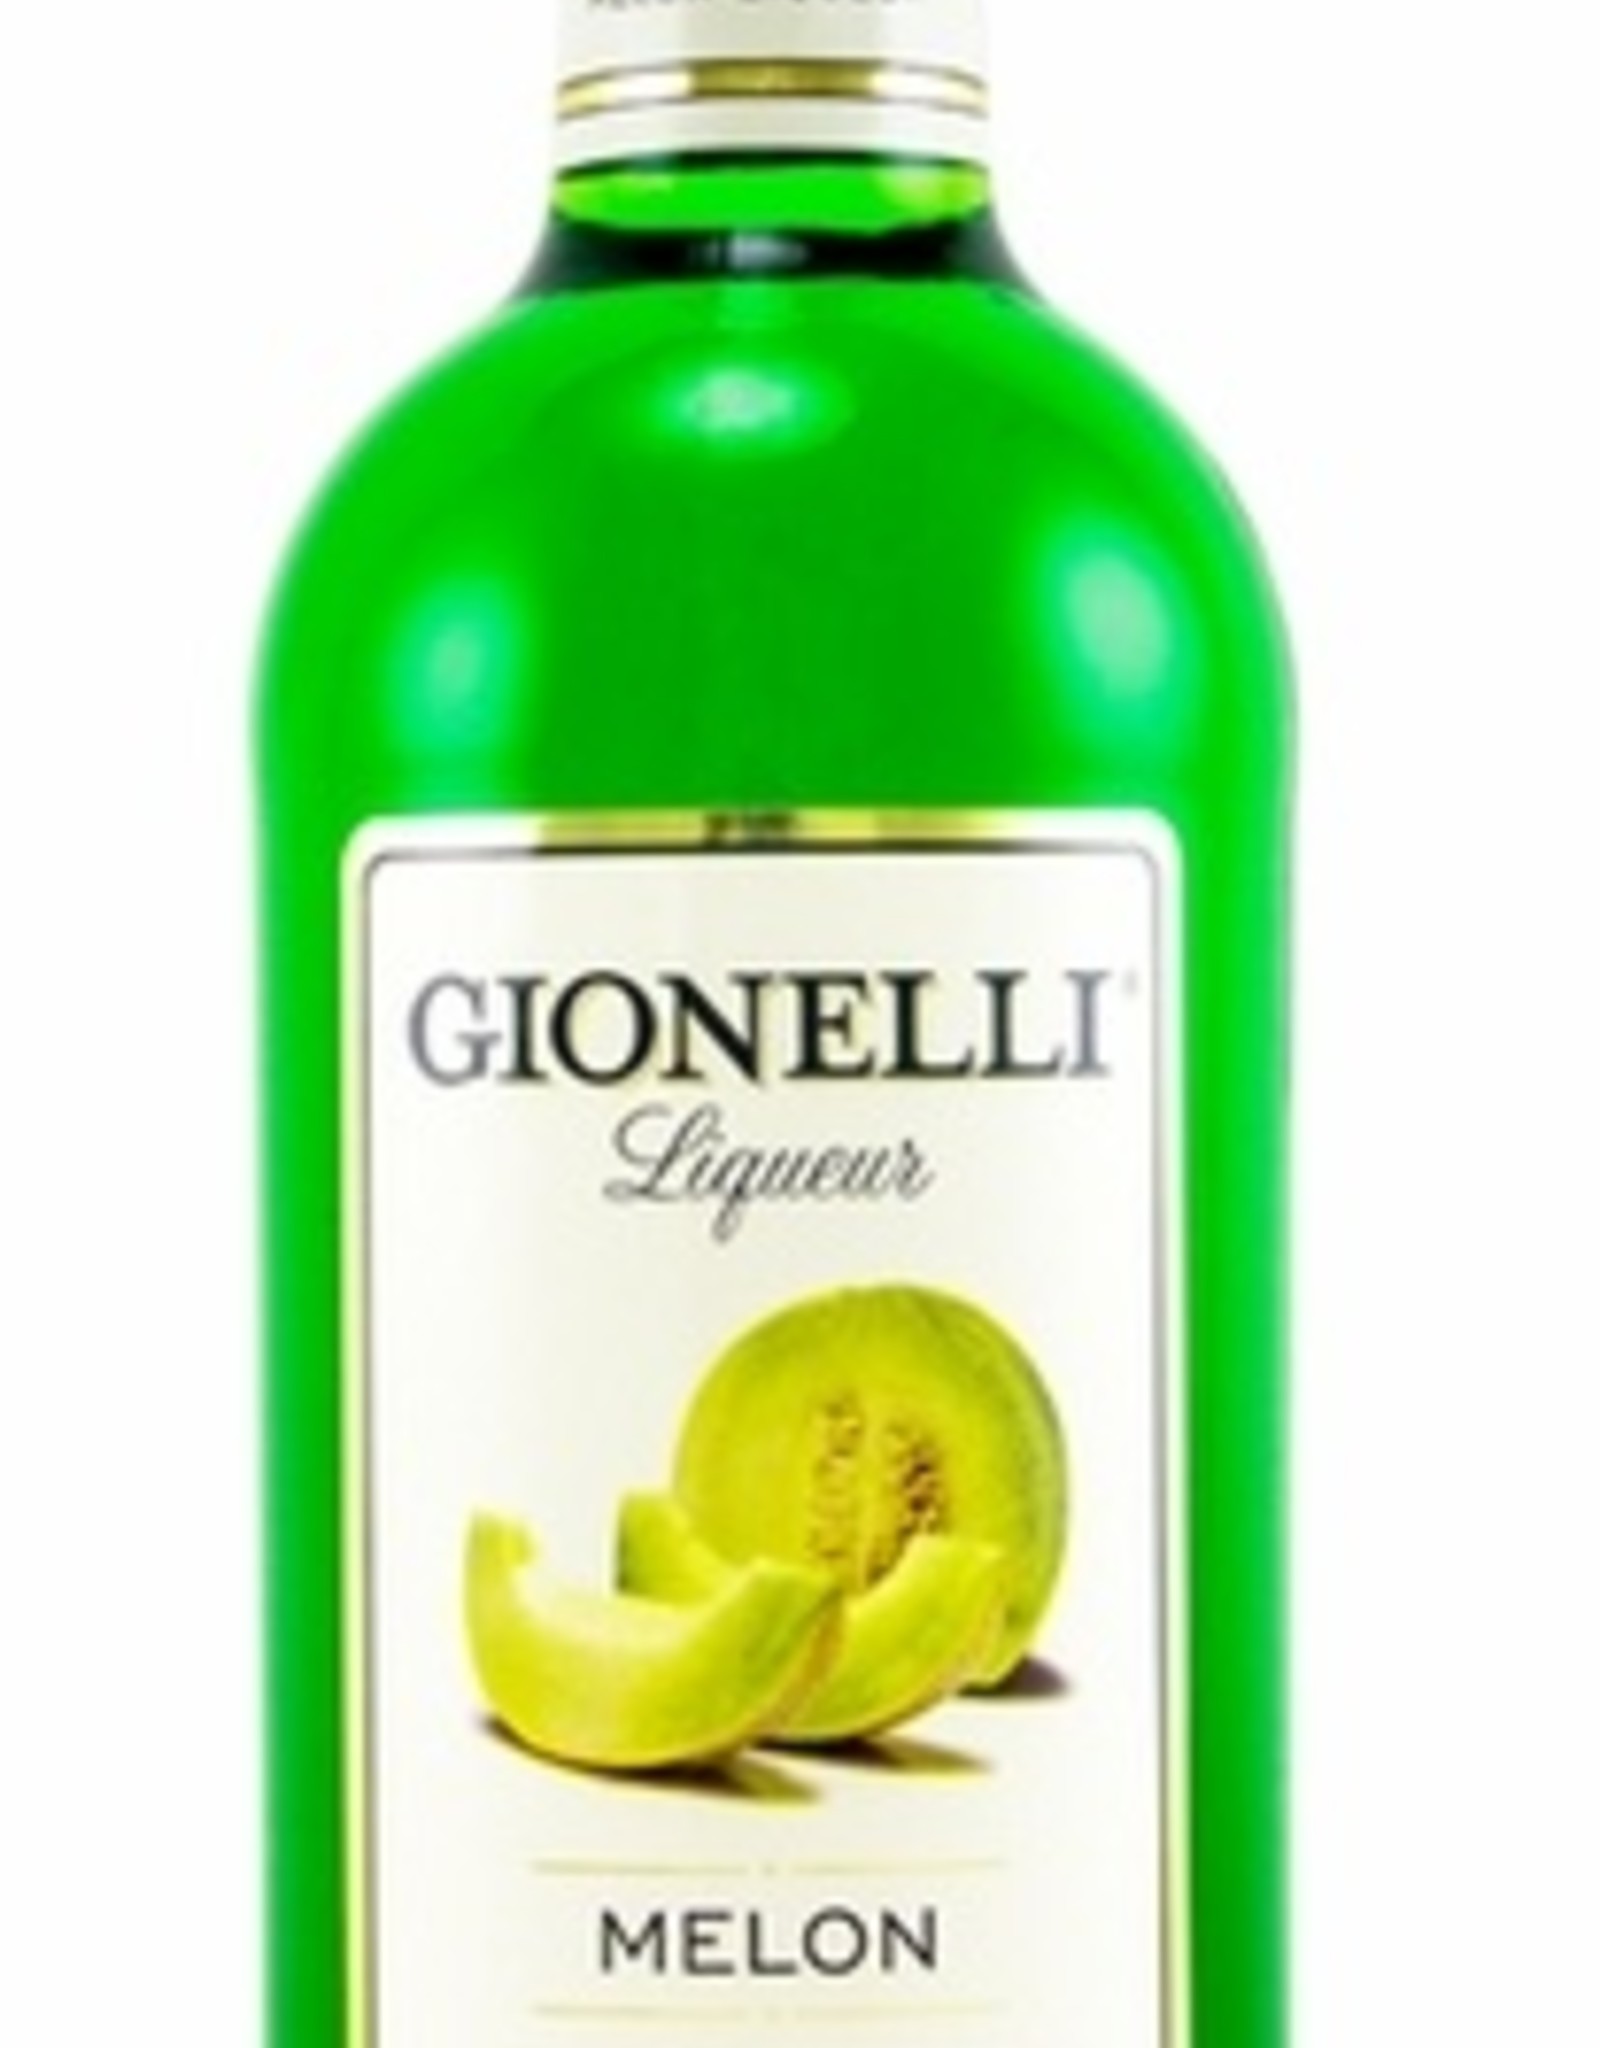 Gionelli Melon 1L - Cork and Key